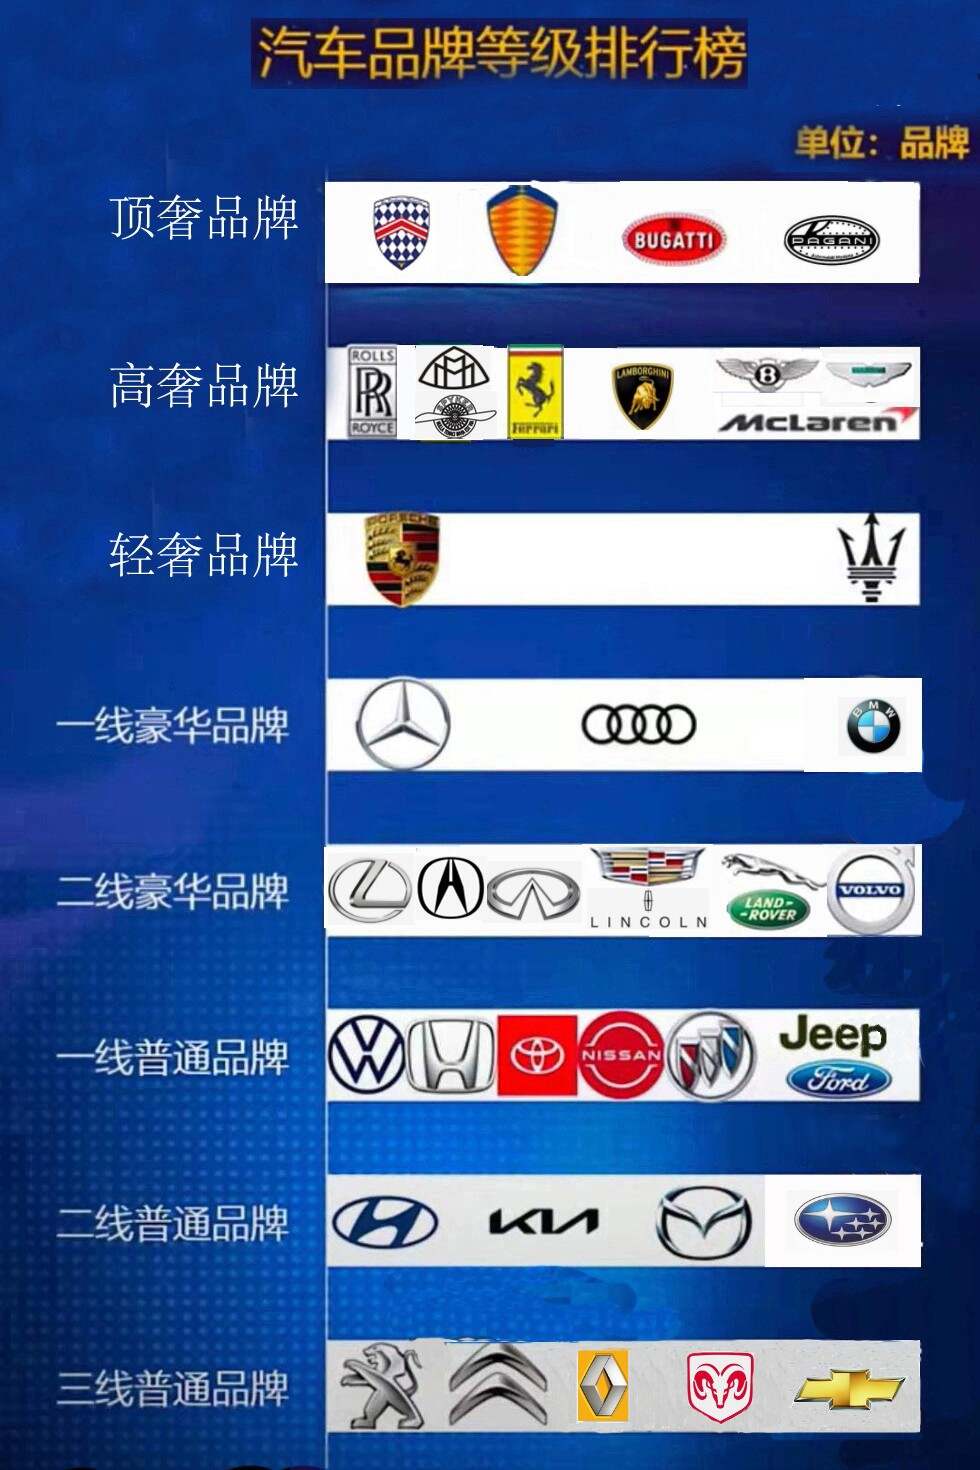 汽车品牌阶级排序